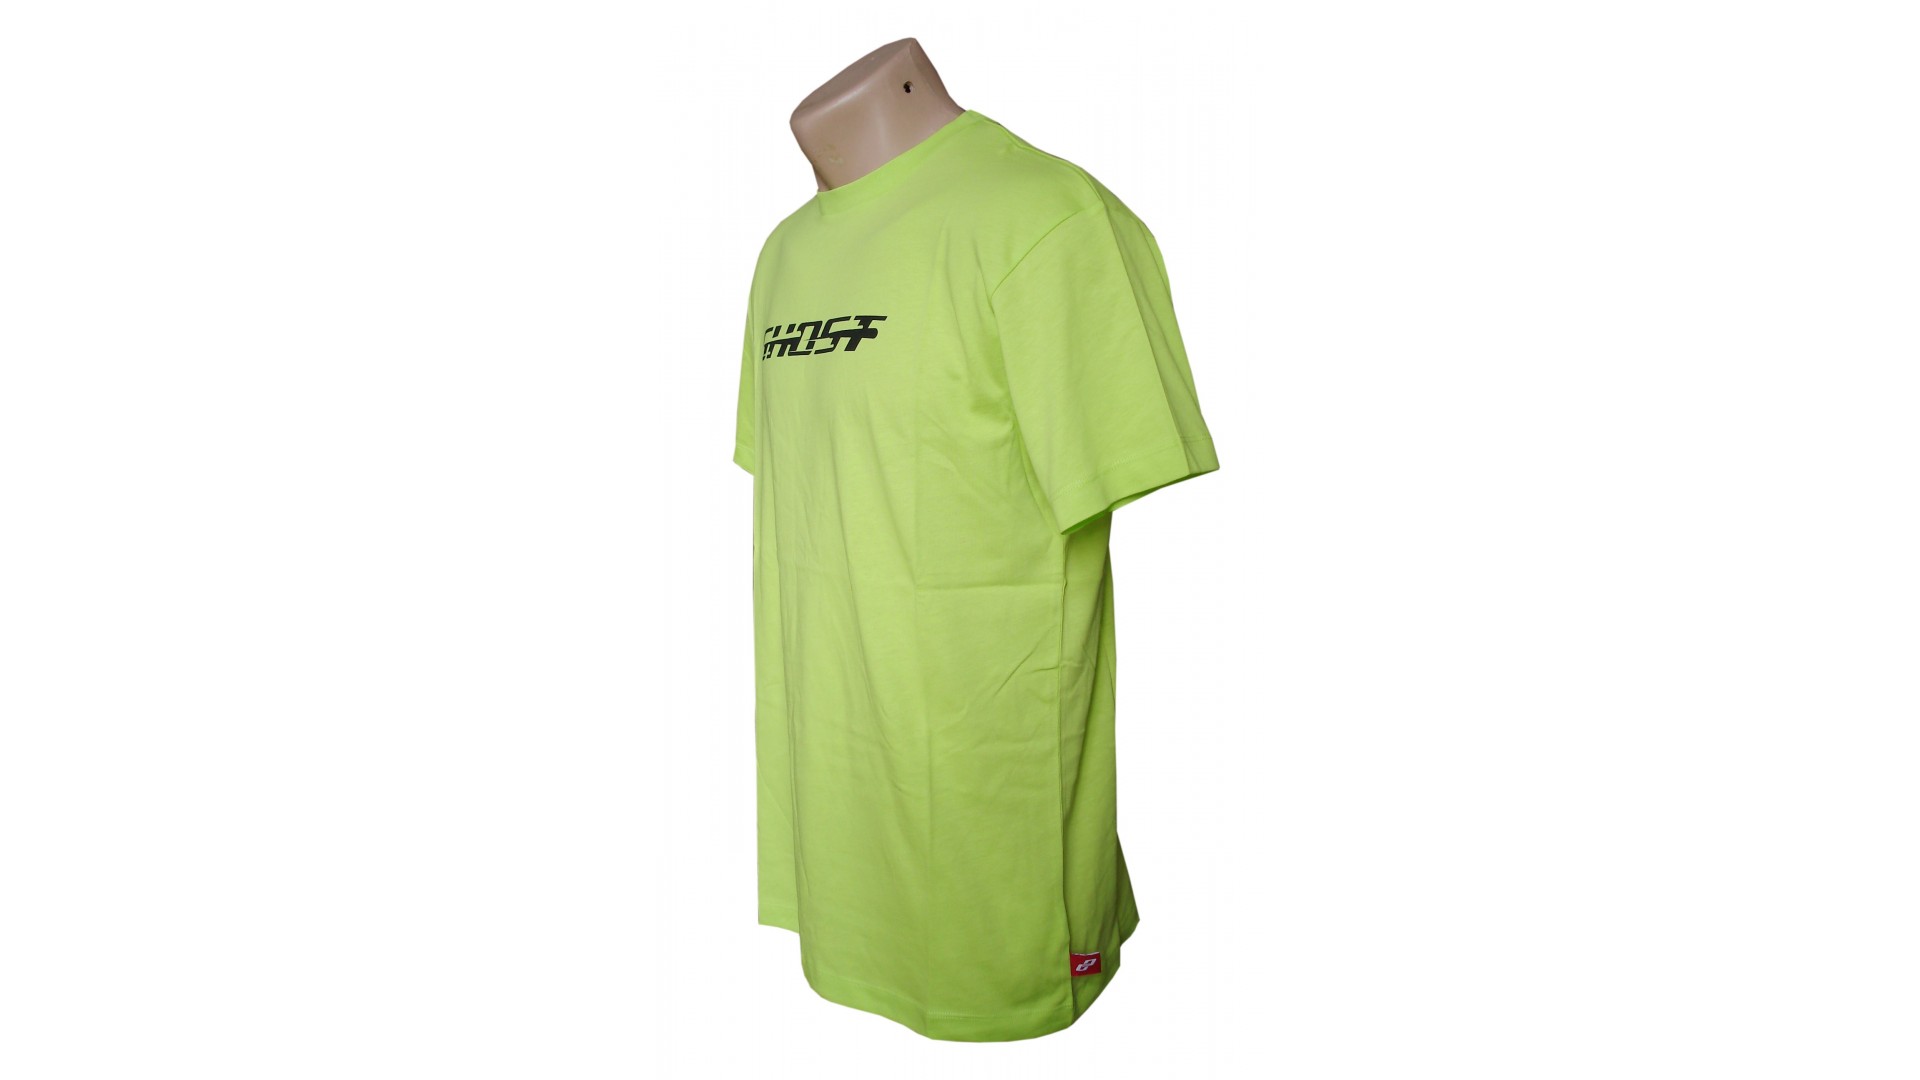 Футболка Ghost T-shirt lime год 2014 вид сбоку